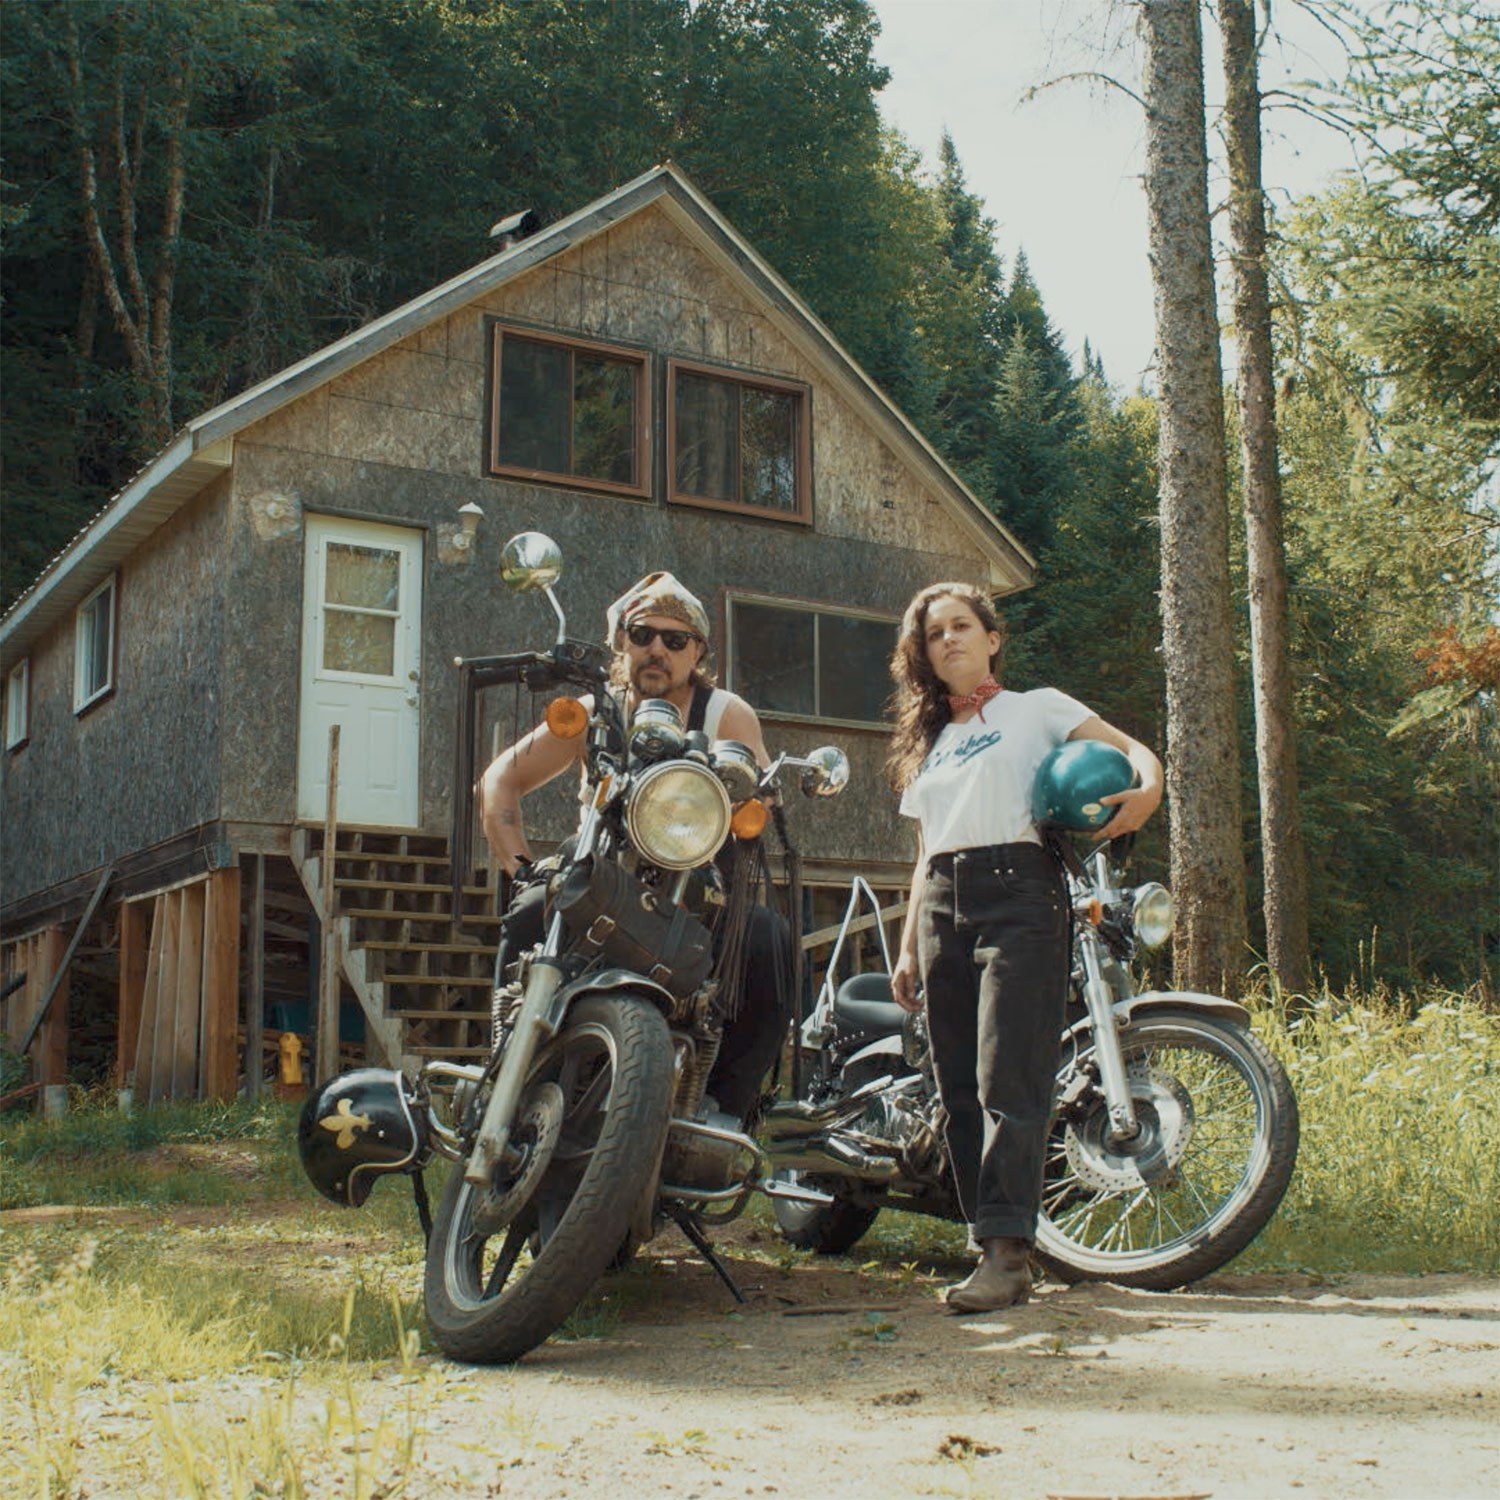 Le duo Ellemetue devant un chalet avec leur motos